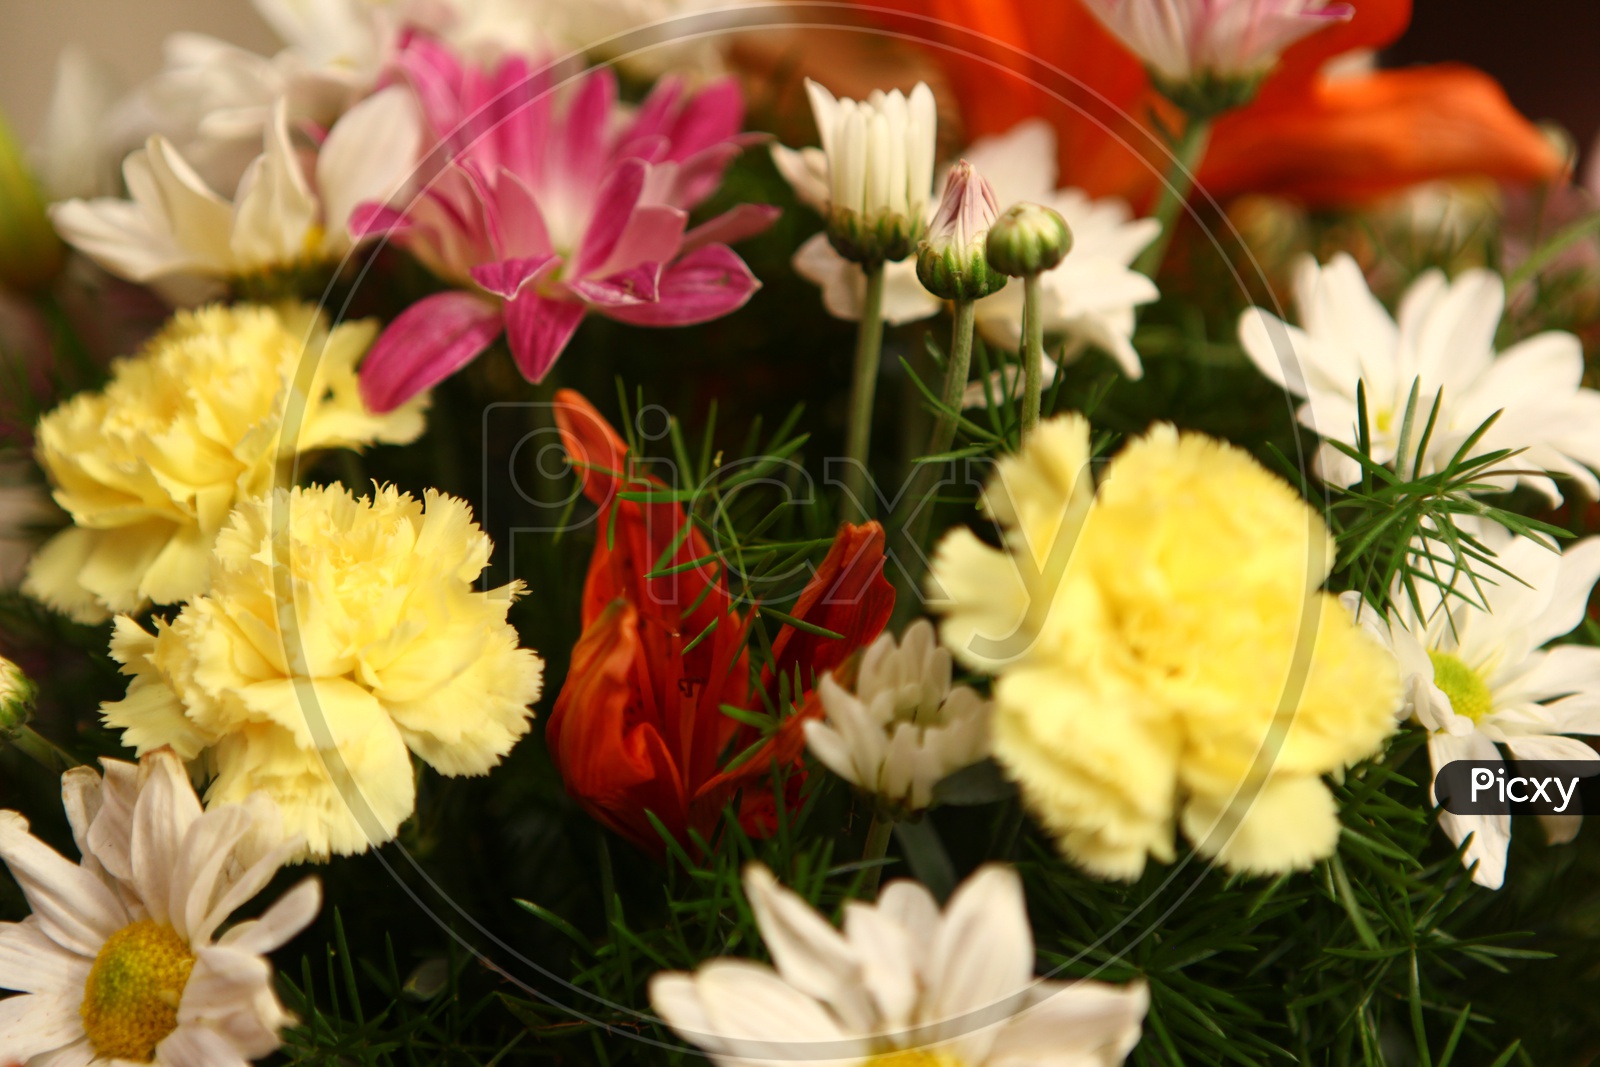 Close up shot of a Flower bouquet